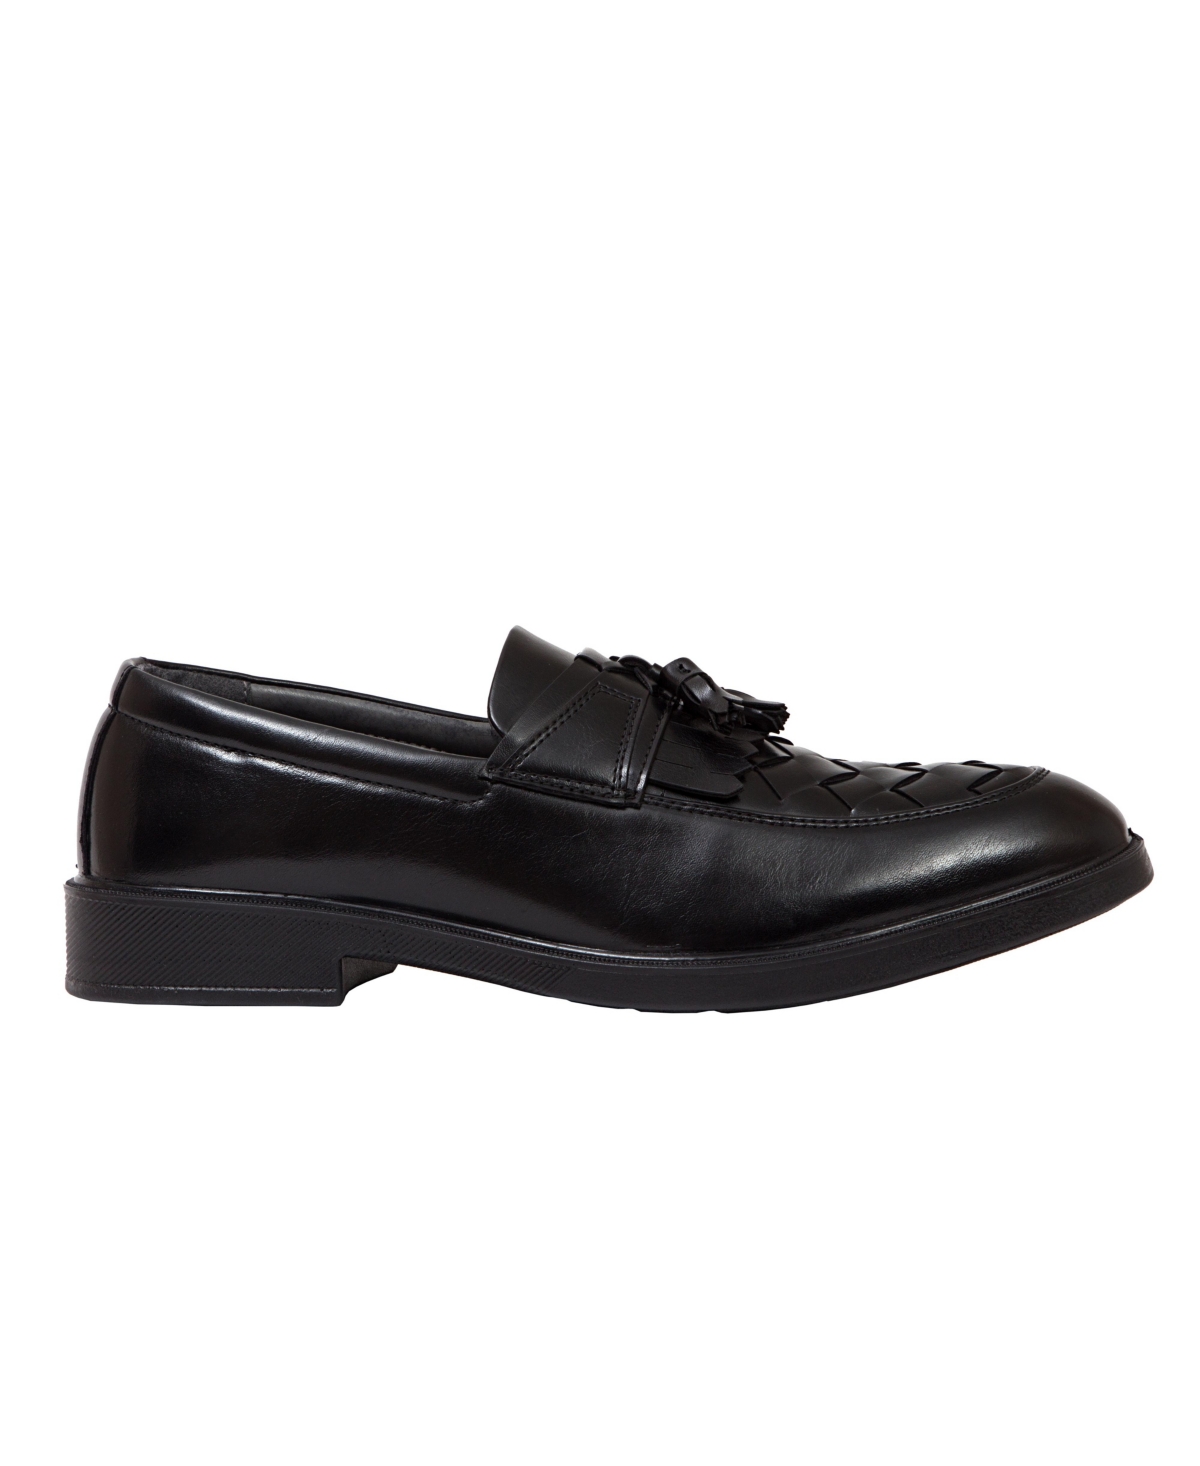 Deer Stags Men's Borough Kiltie Tassel Comfort Loafers Men's Shoes